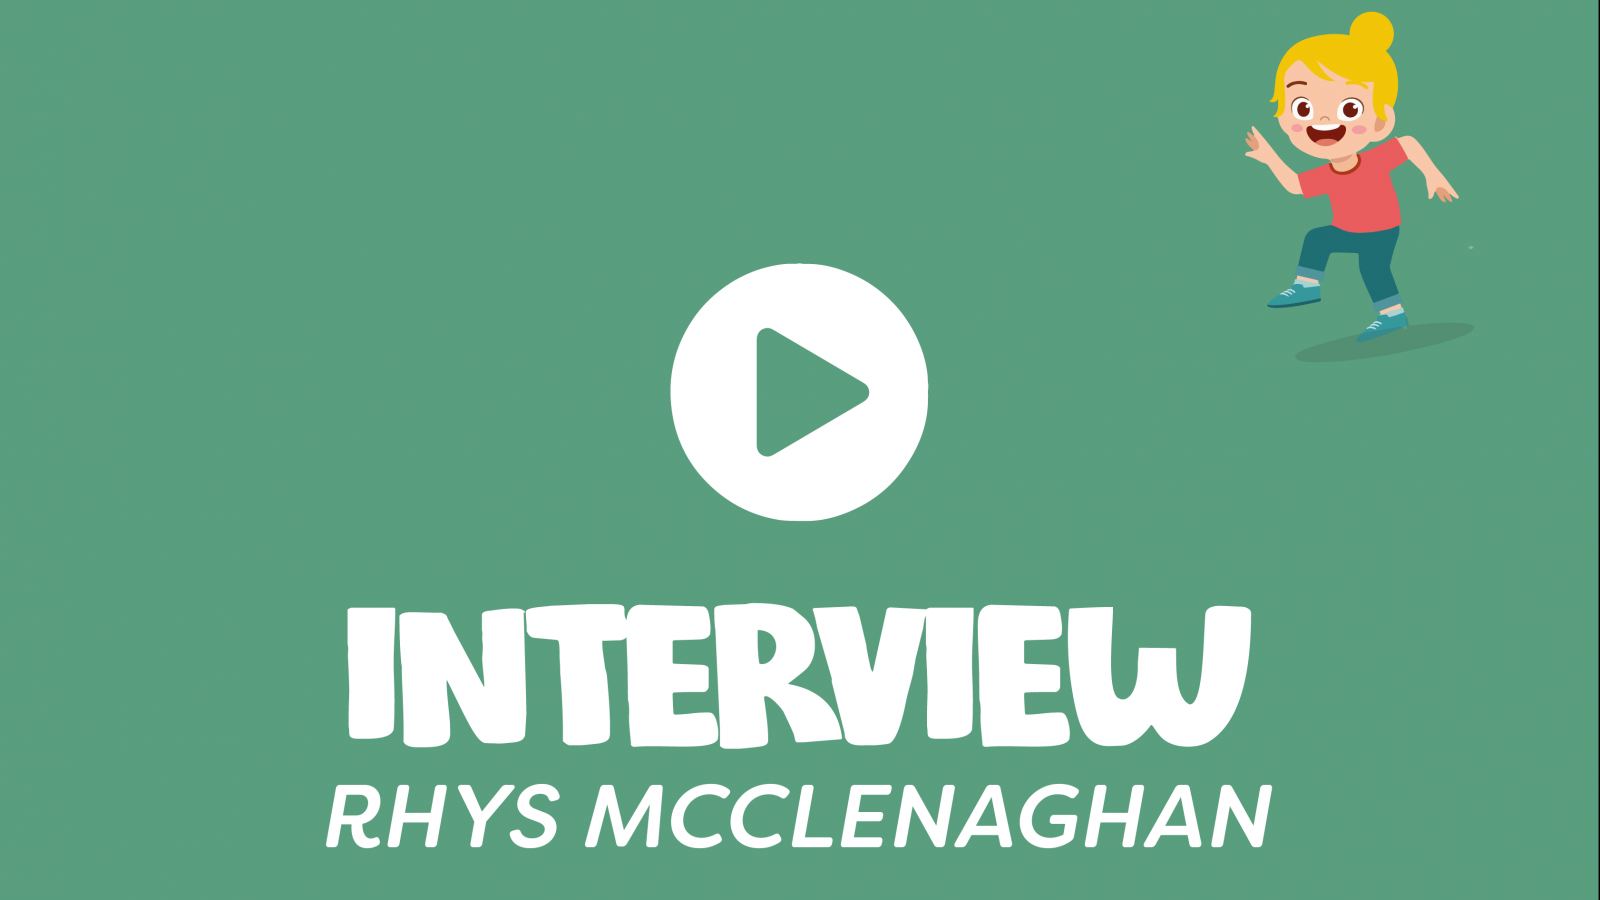 INTERVIEW - Rhys